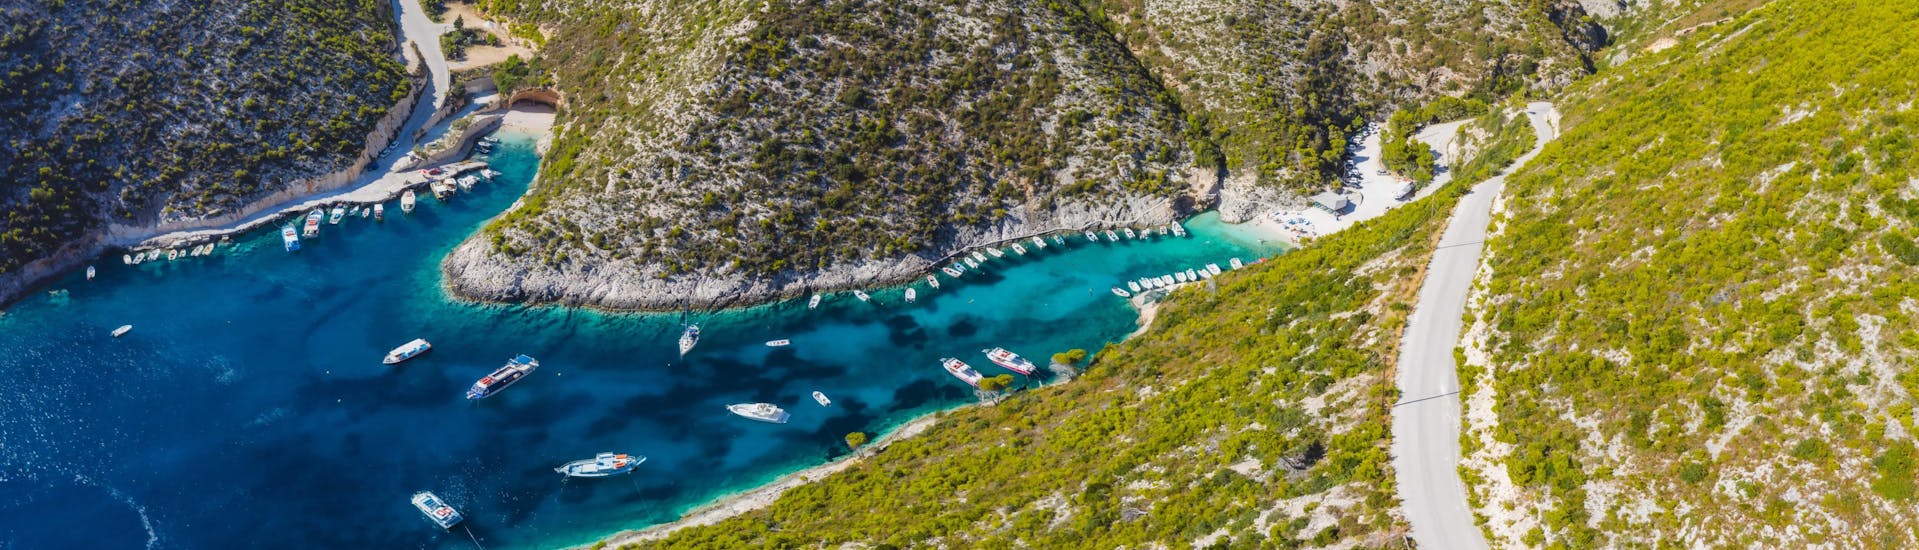 Hermosa imagen de Porto Vromi, un pueblo de pescadores en Zakynthos, destino popular para los viajes en barco. 